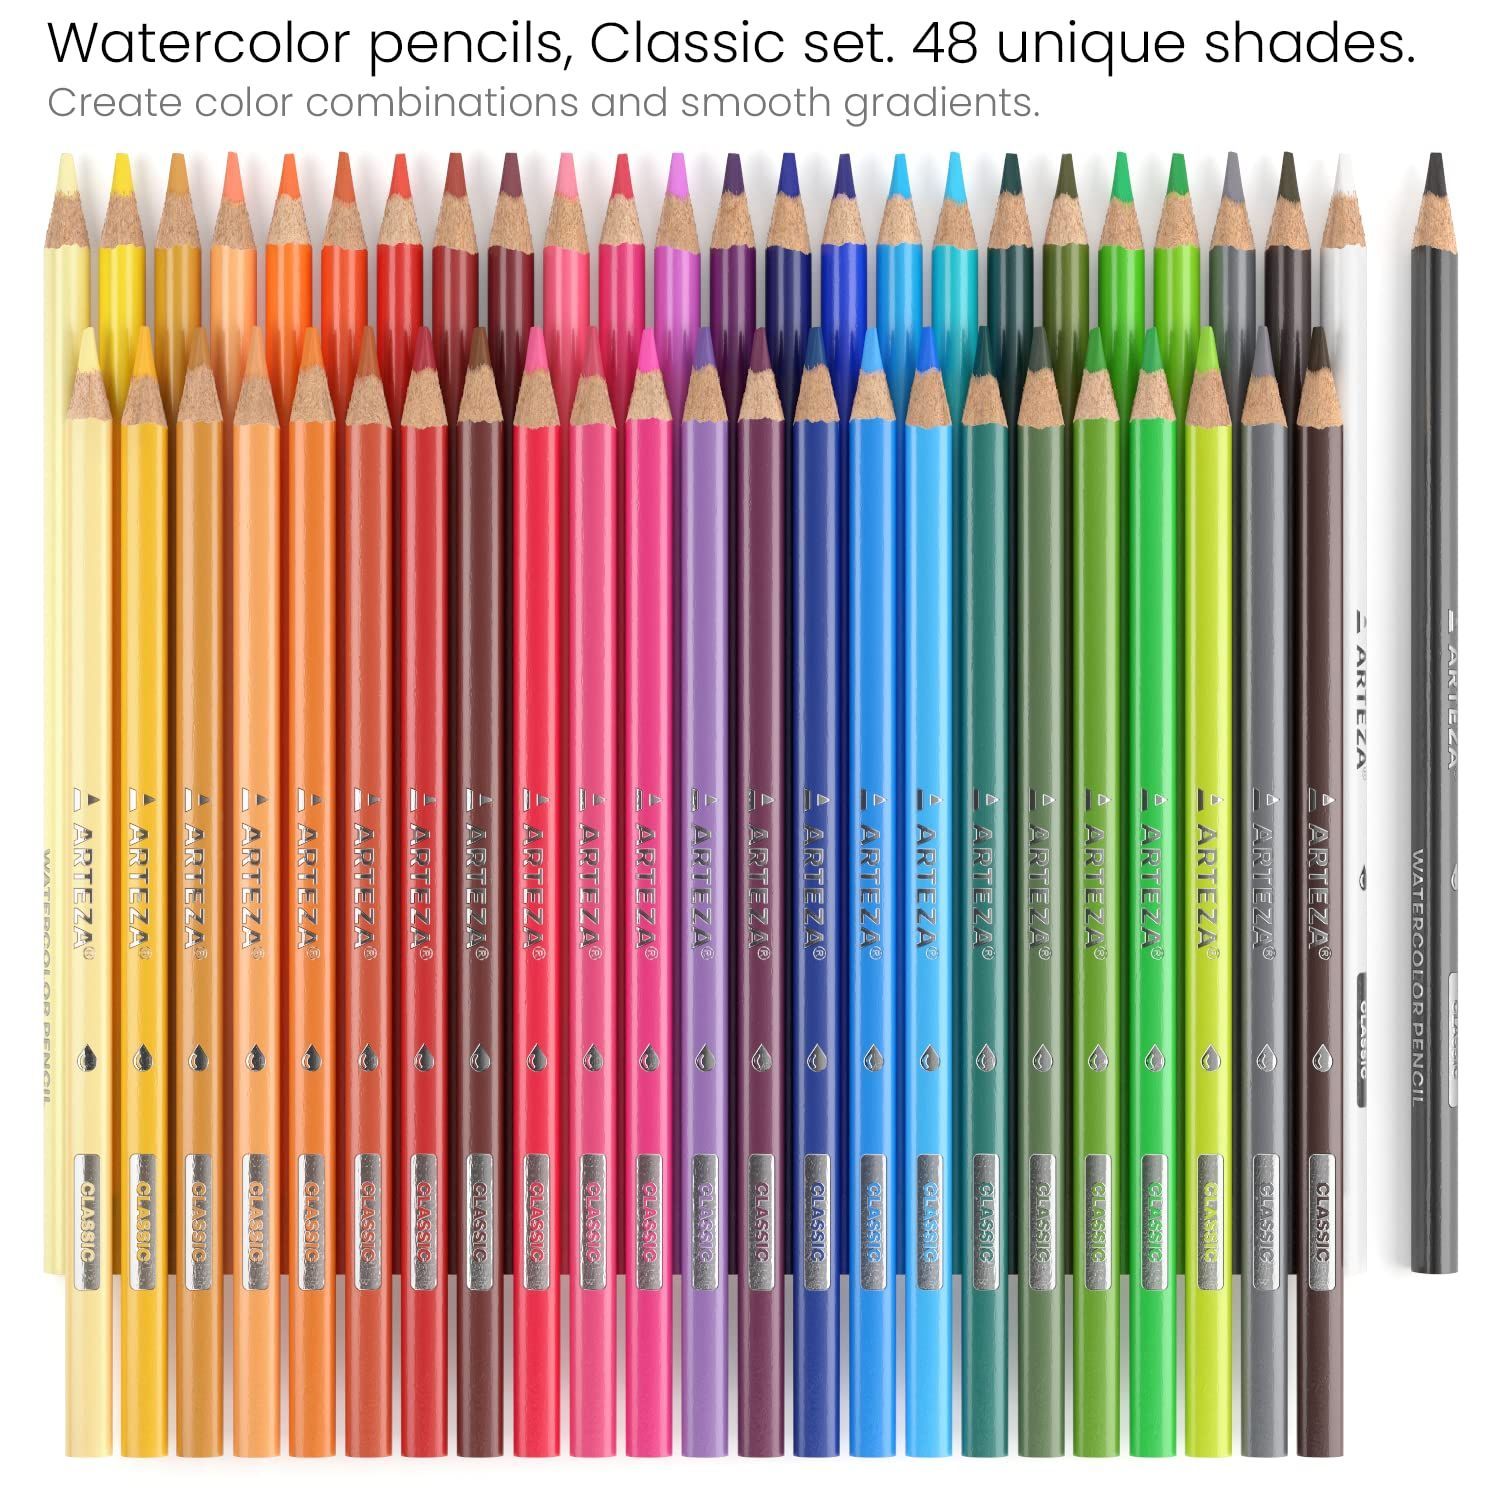 Arteza水彩色鉛筆、48色セット、削り済みの三角形の色鉛筆、ドローイング、スケッチ、ペイント用、お子様から大人まで